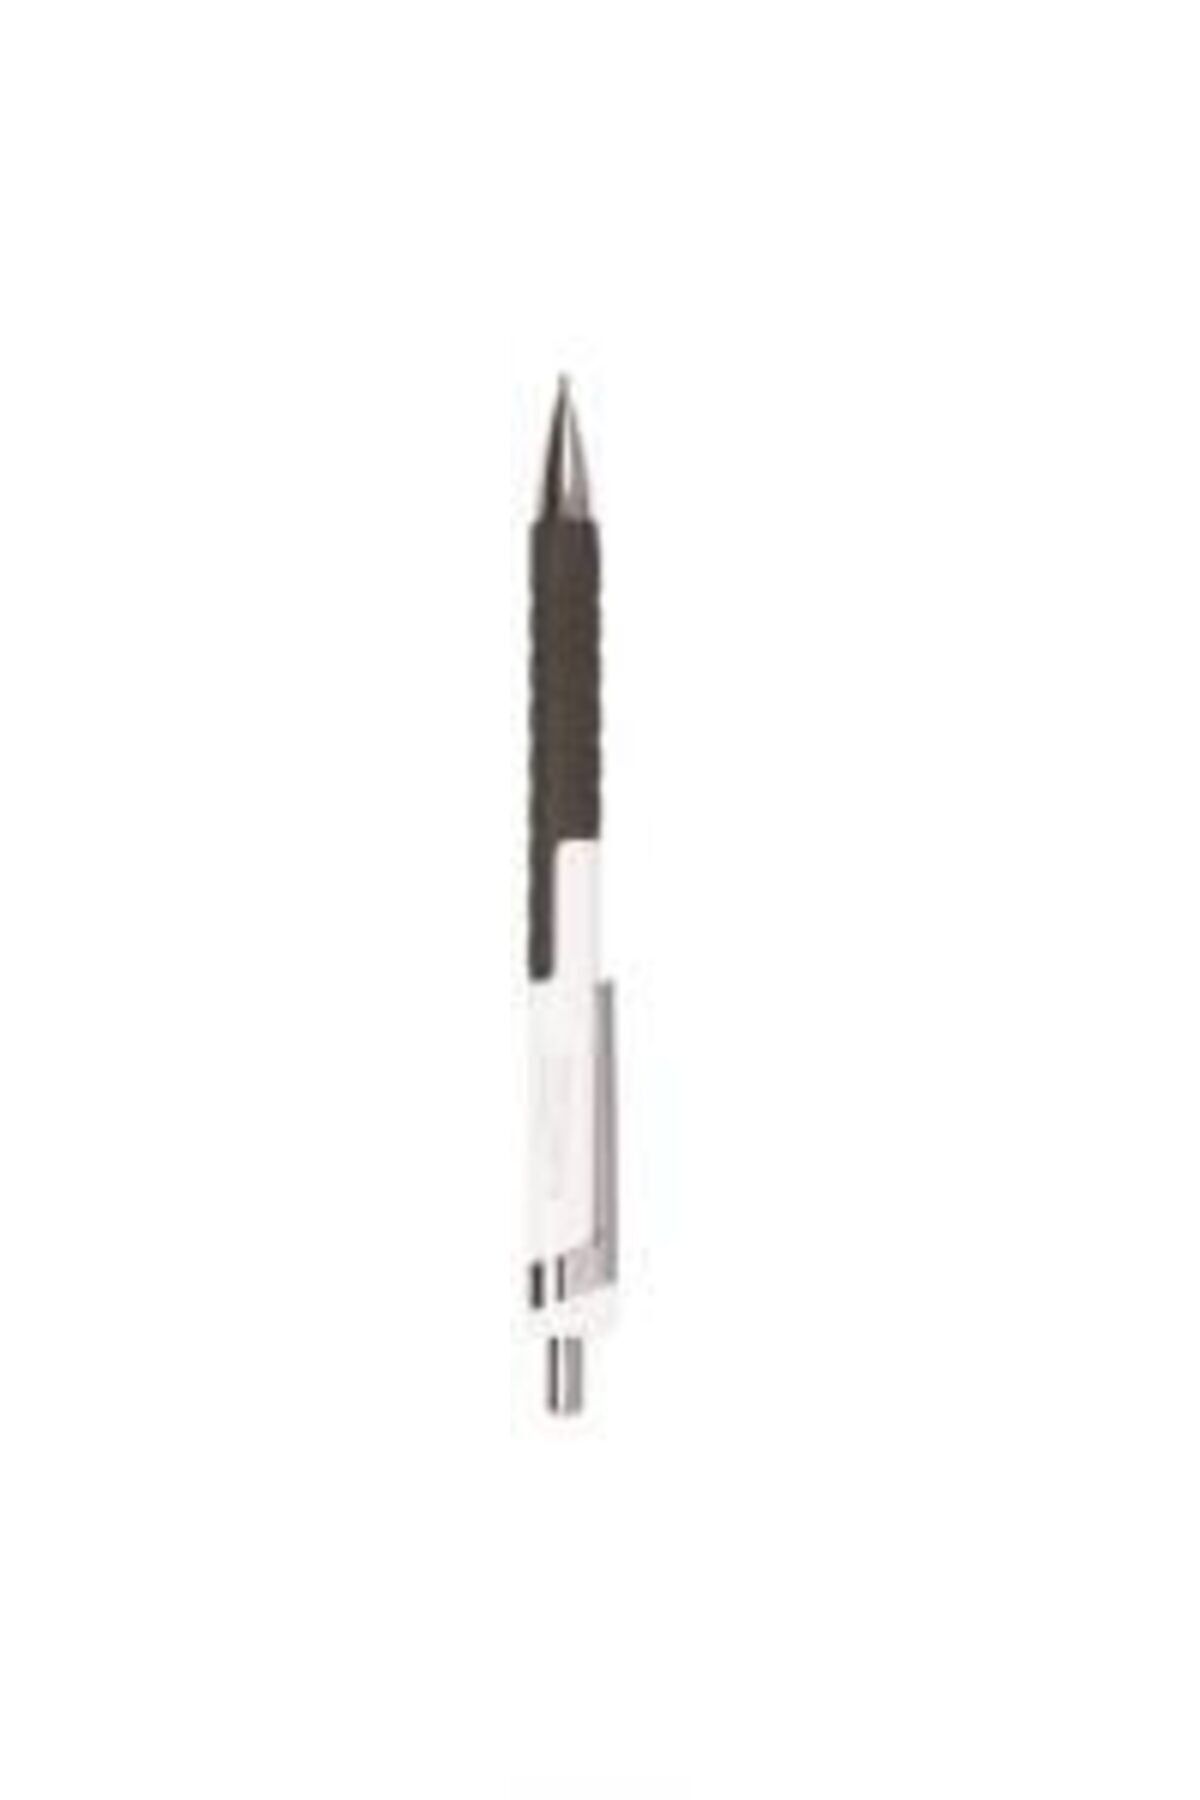 Gıpta Versatil Kalem (mekanik Uçlu Kurşun Kalem) Kipling 0.9mm Beyaz (12 Li Paket) K1885